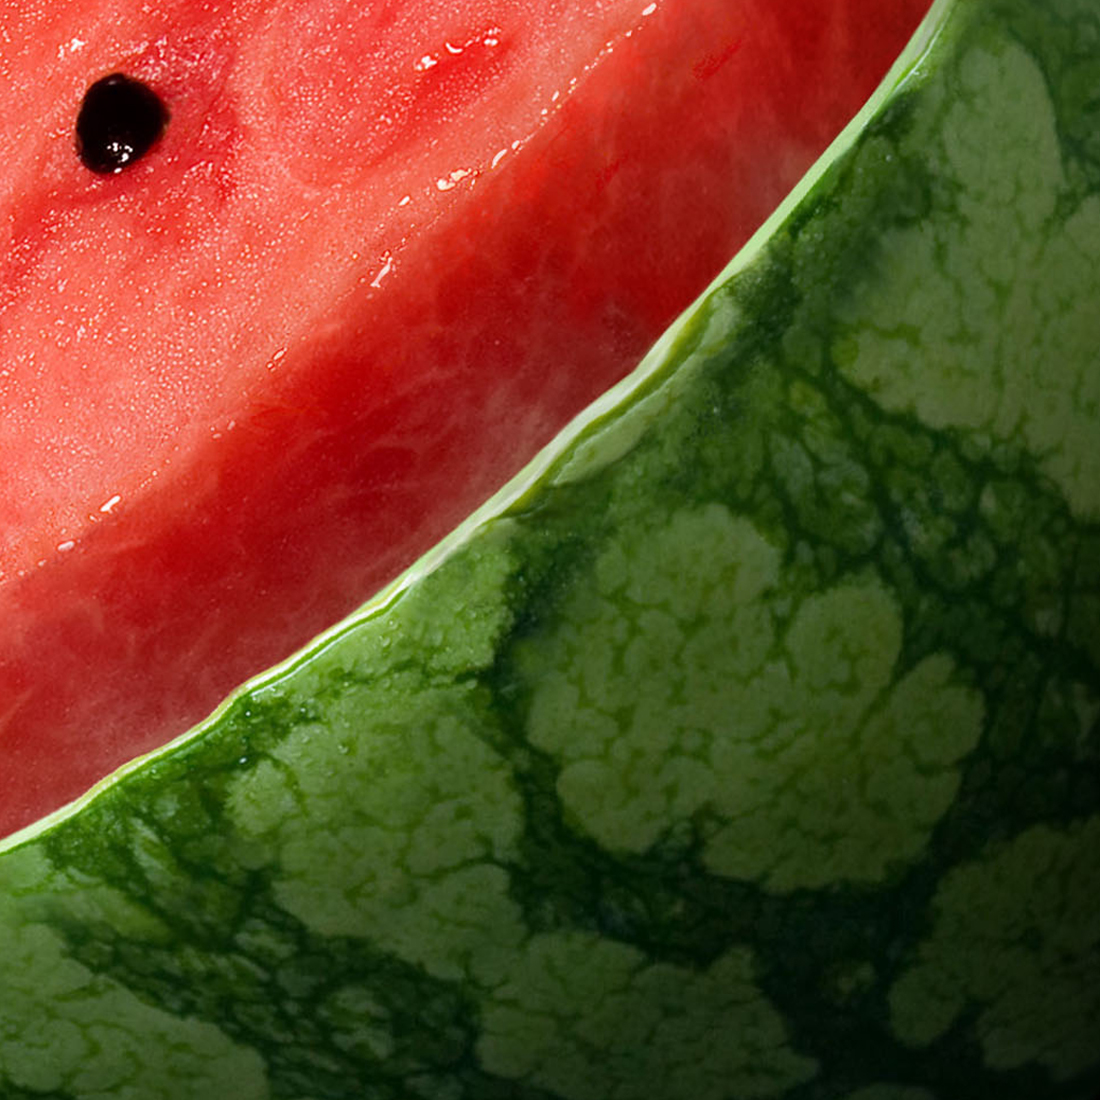 Samsung smart space refigerator watermelon графический дизайн фотосъемка ретушь фото Супервайзинг имидж рекламный постер